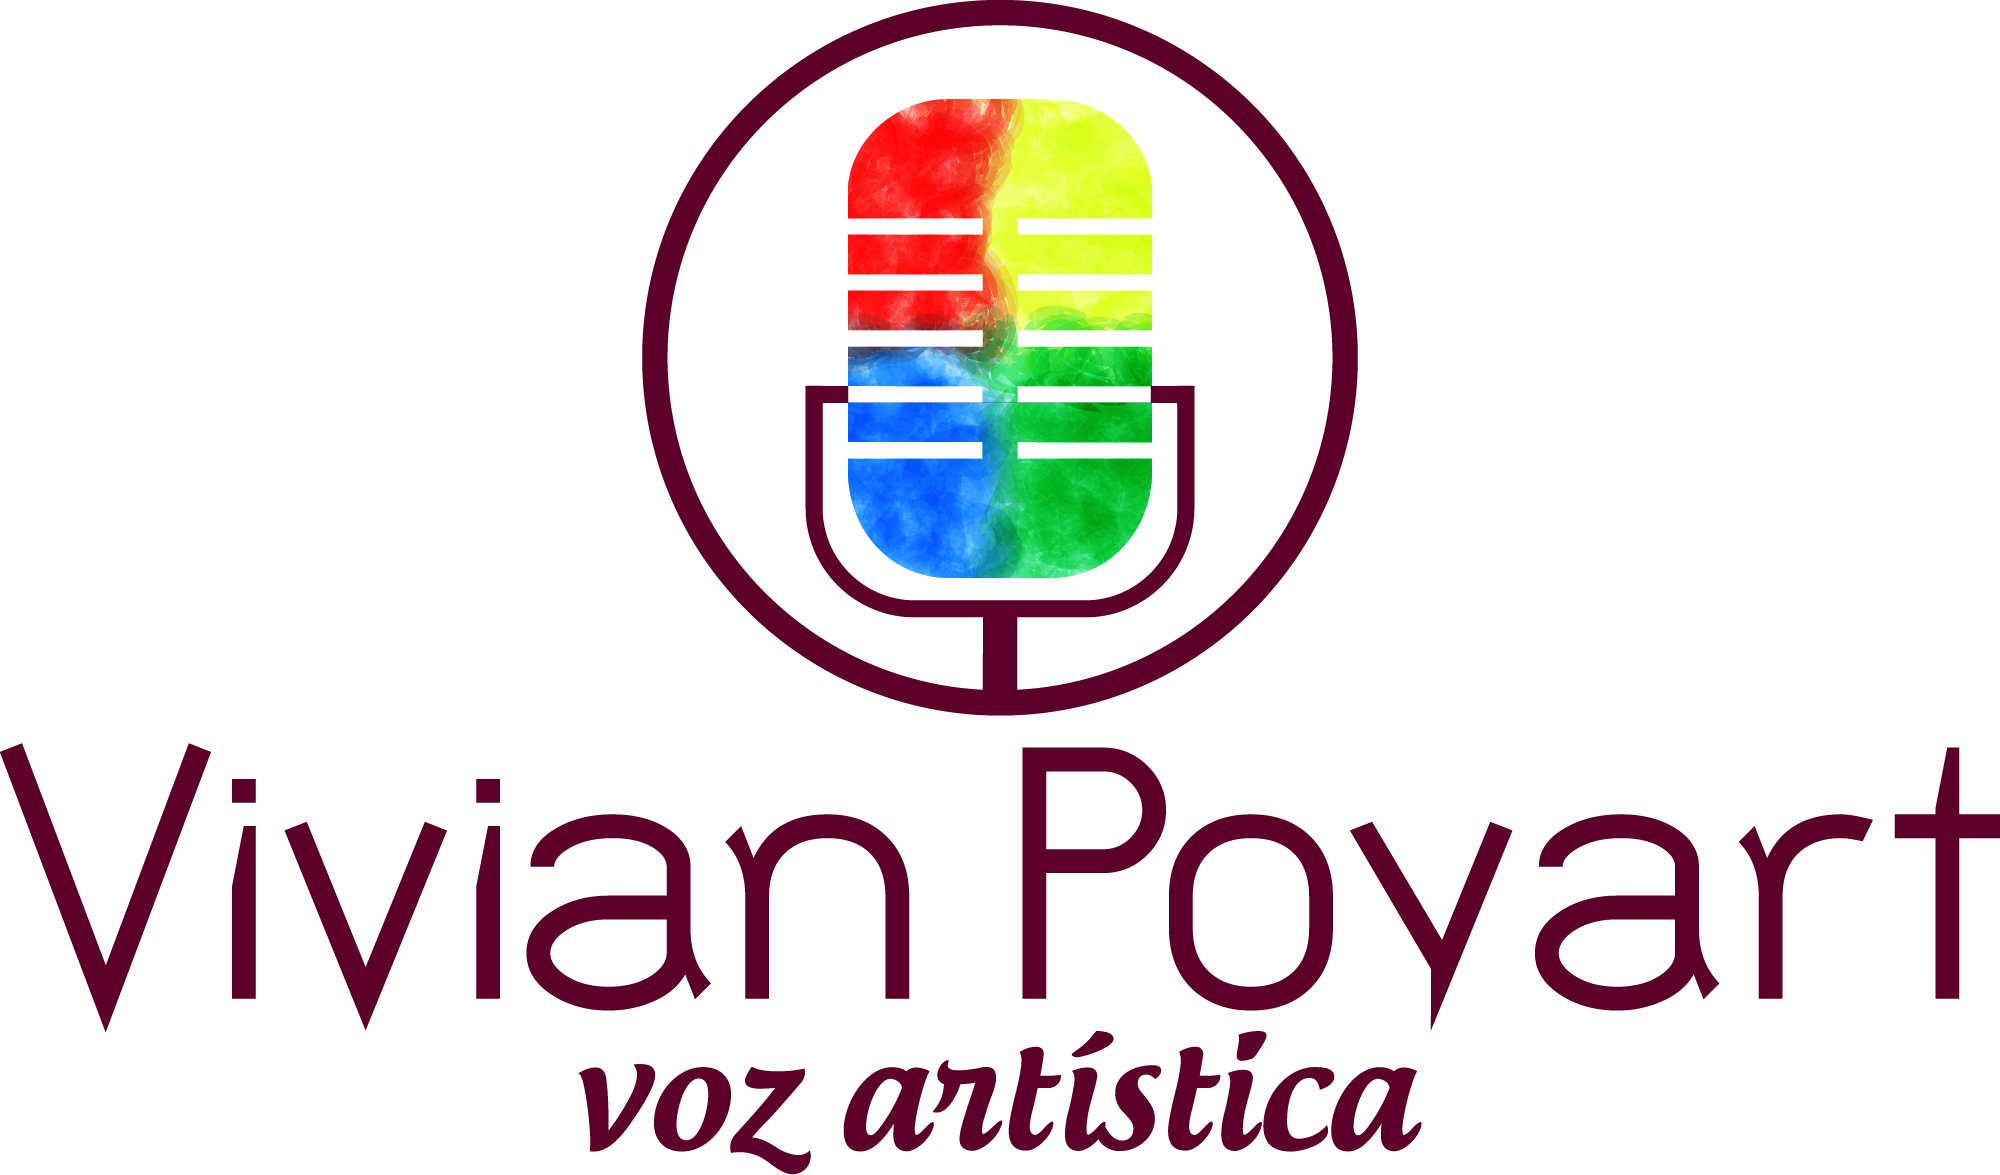 Vivian Poyart - Voz Artística Logo